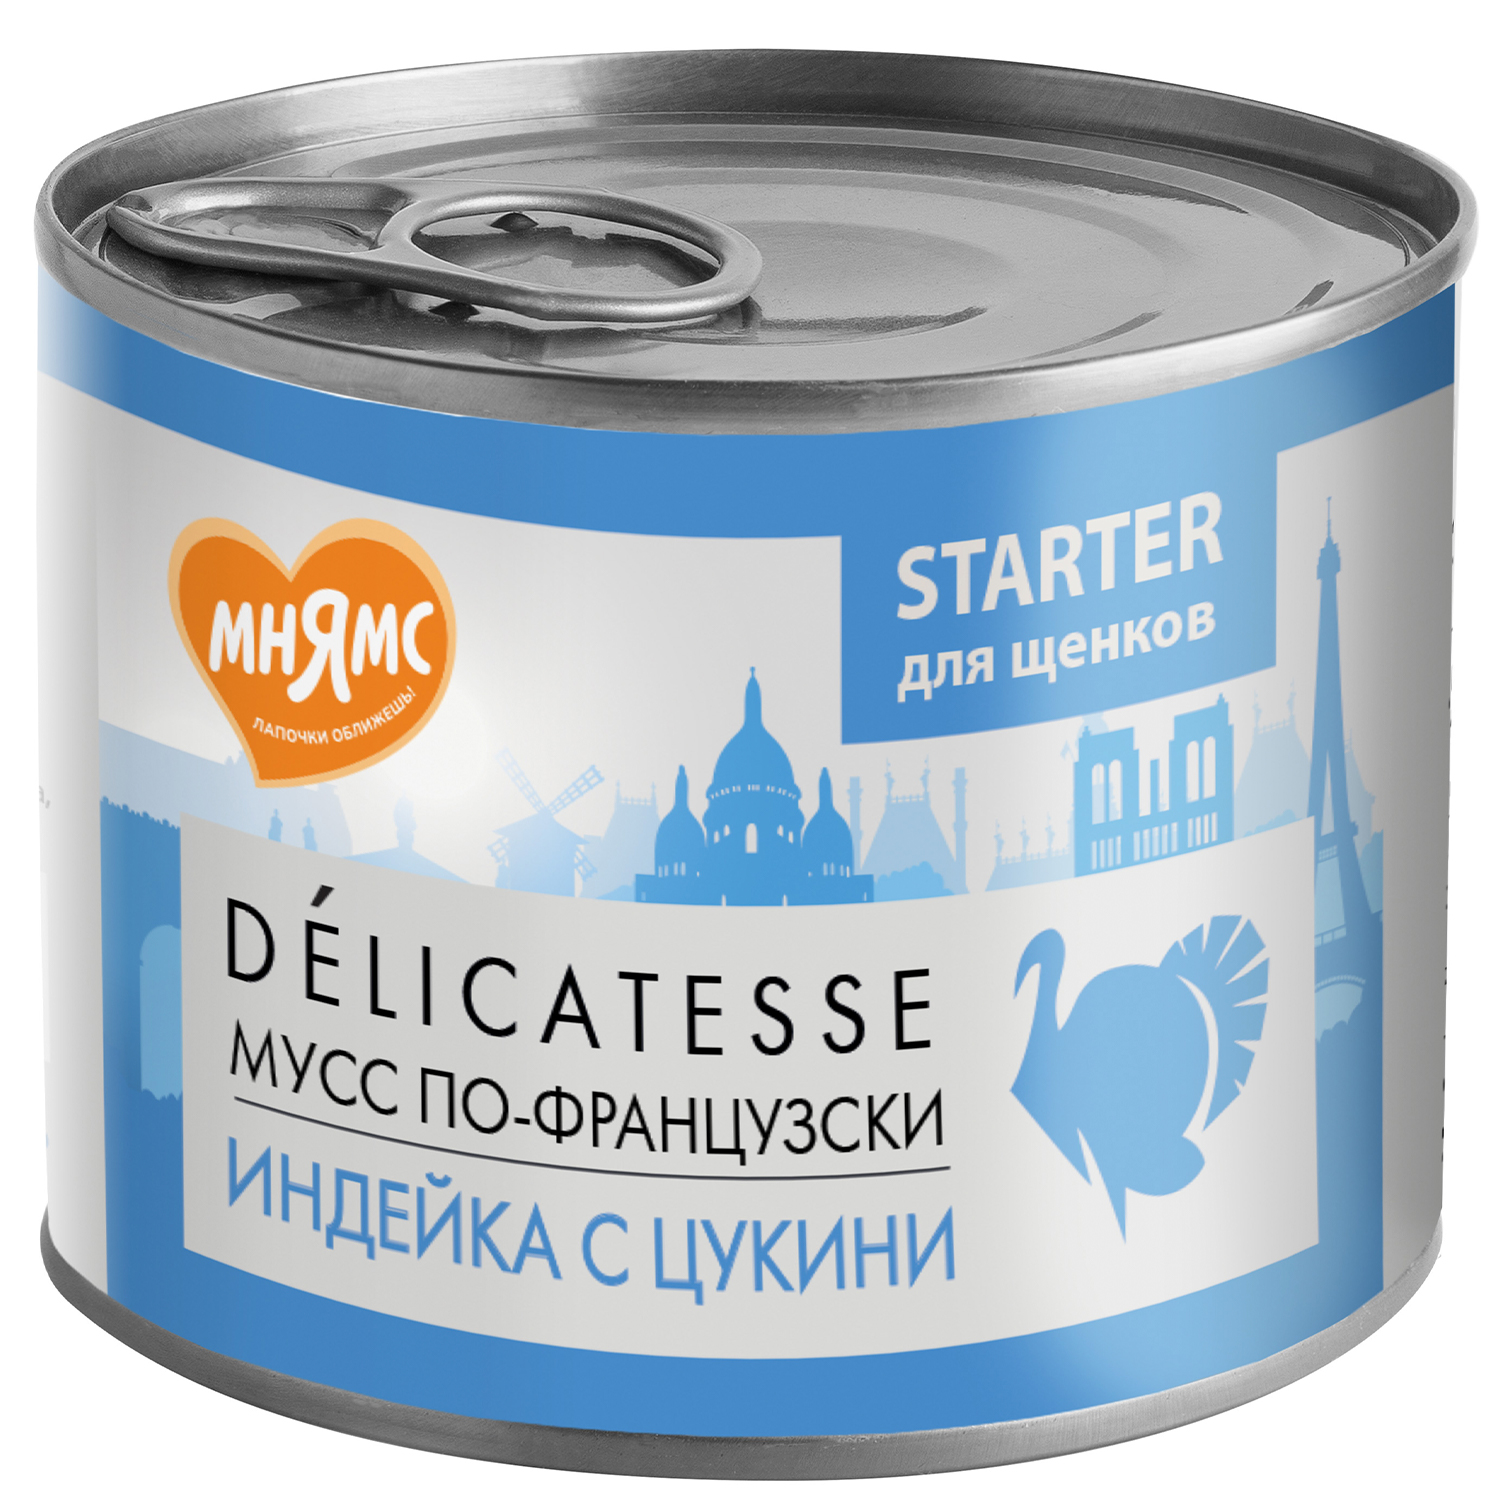 консервы для щенков до 4х месяцев "мнямс delicatesse" мусс по-французски (паштет из индейки с цукини)